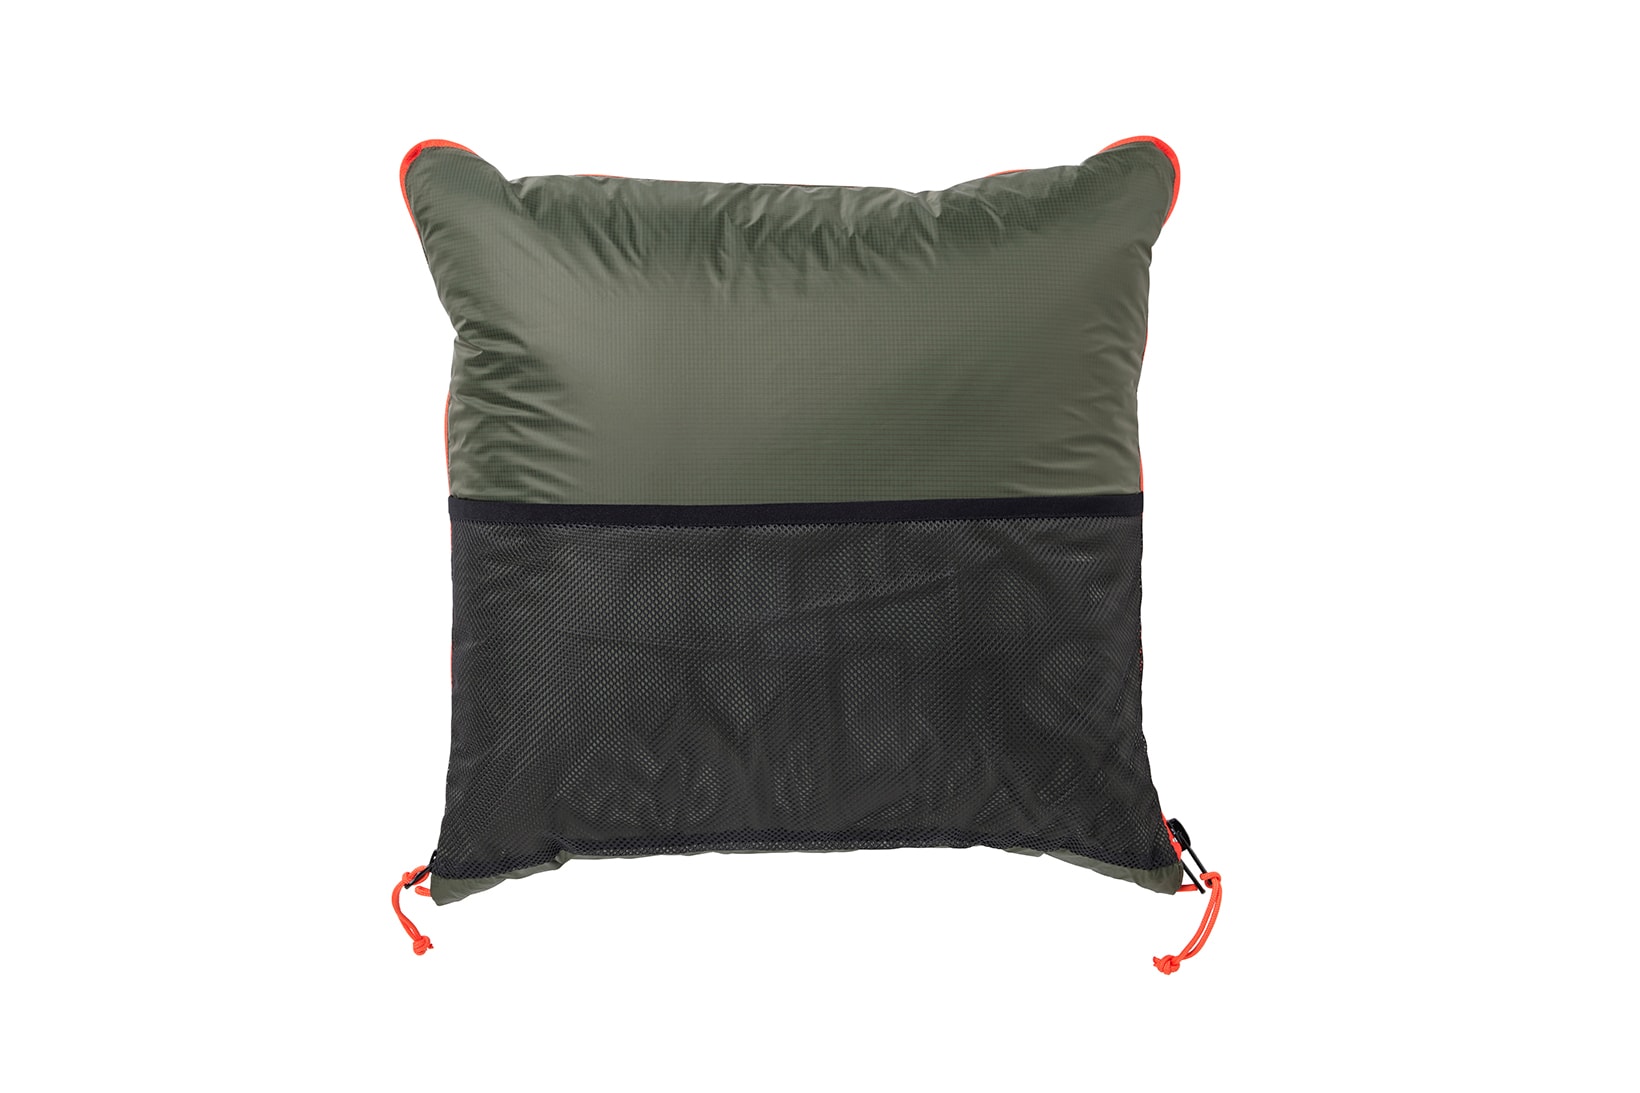 IKEA FALTMAL Quilt Pillow Wearable Blanket Sleeping Bag Quillow